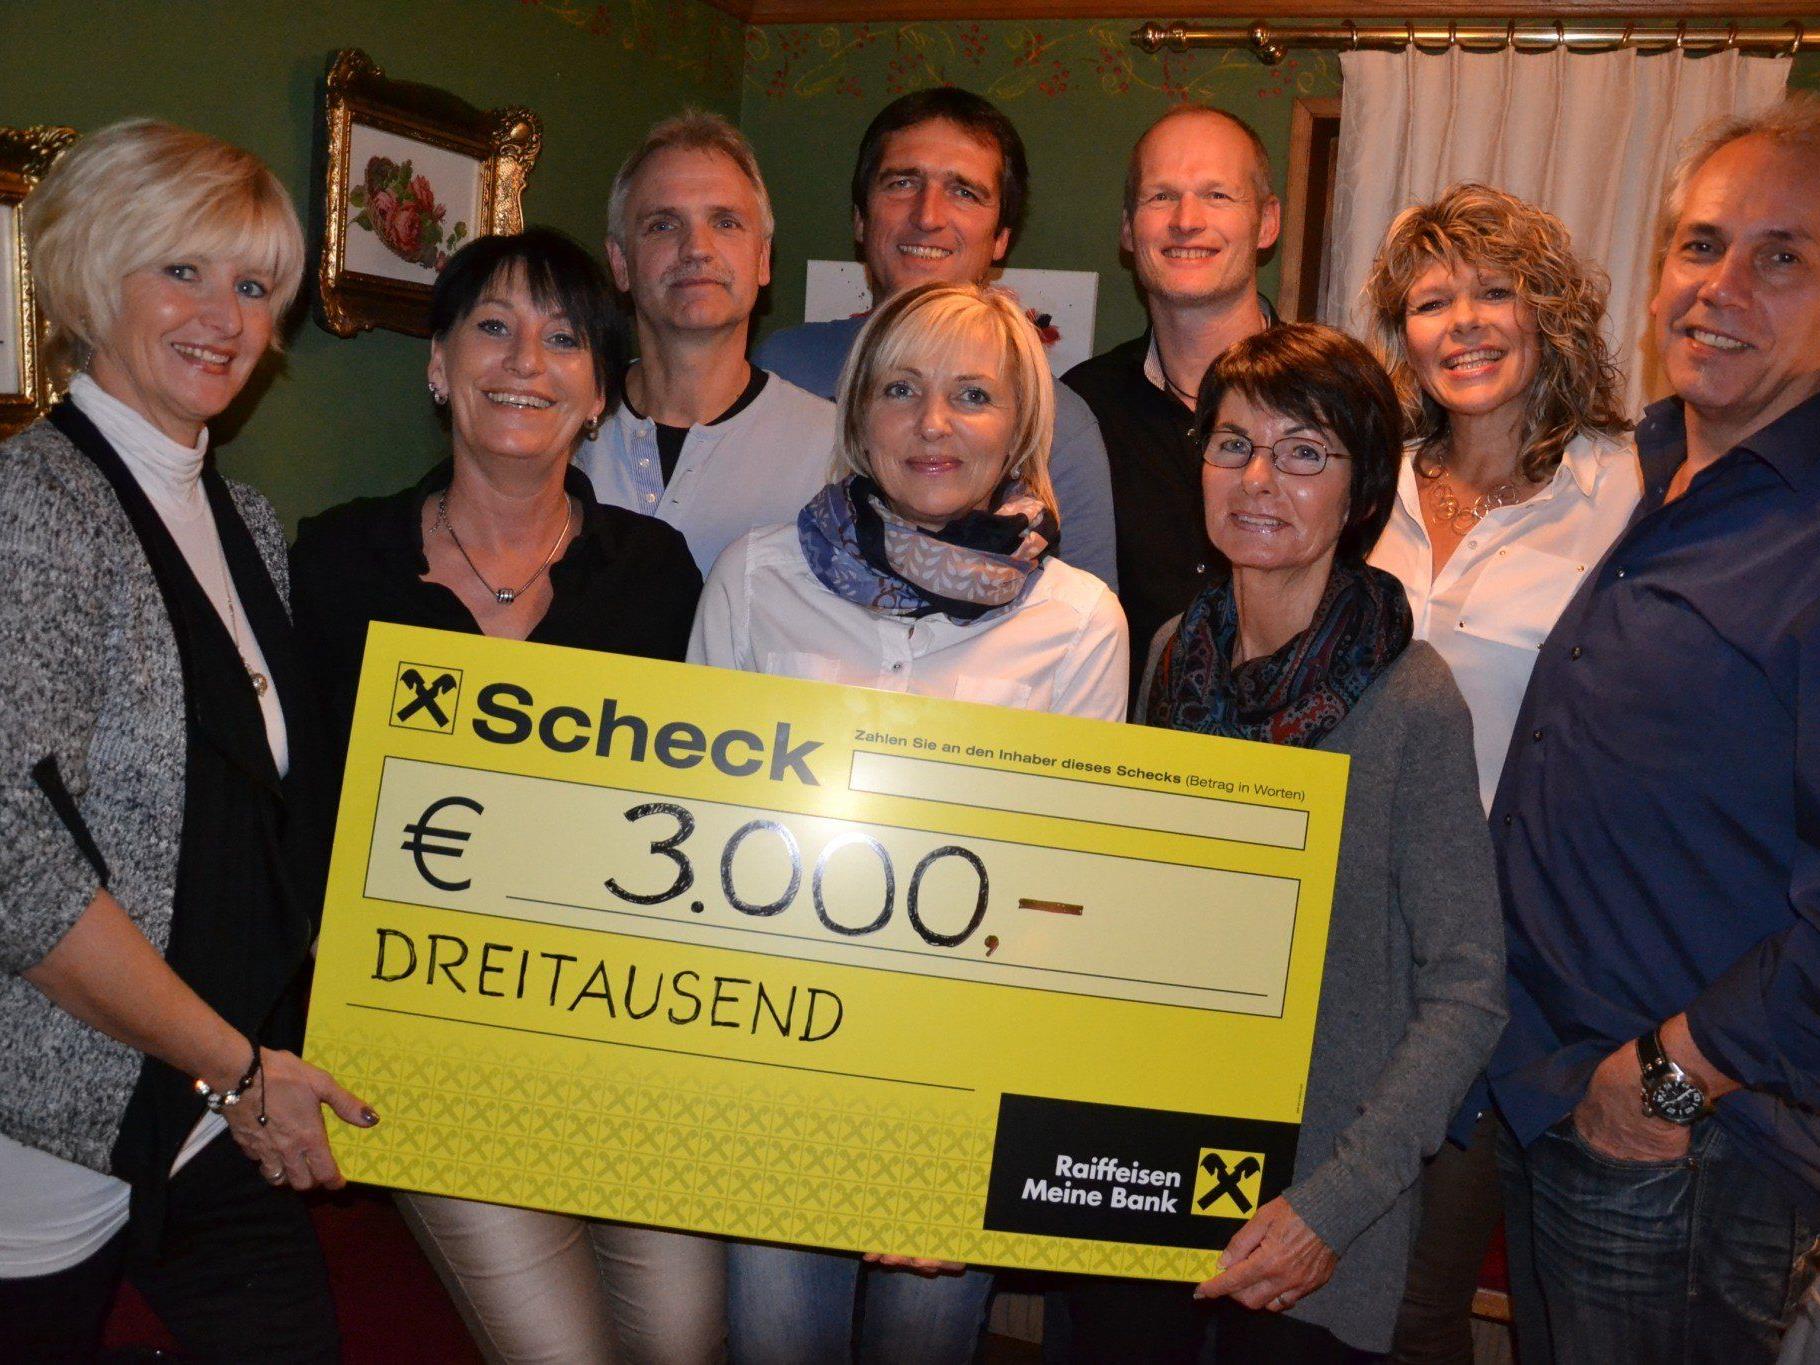 DAs Organisationsteam der Ü40-Party mit Inge Sulzer (3. von rechts) bei der Spendenübergabe in Götzis